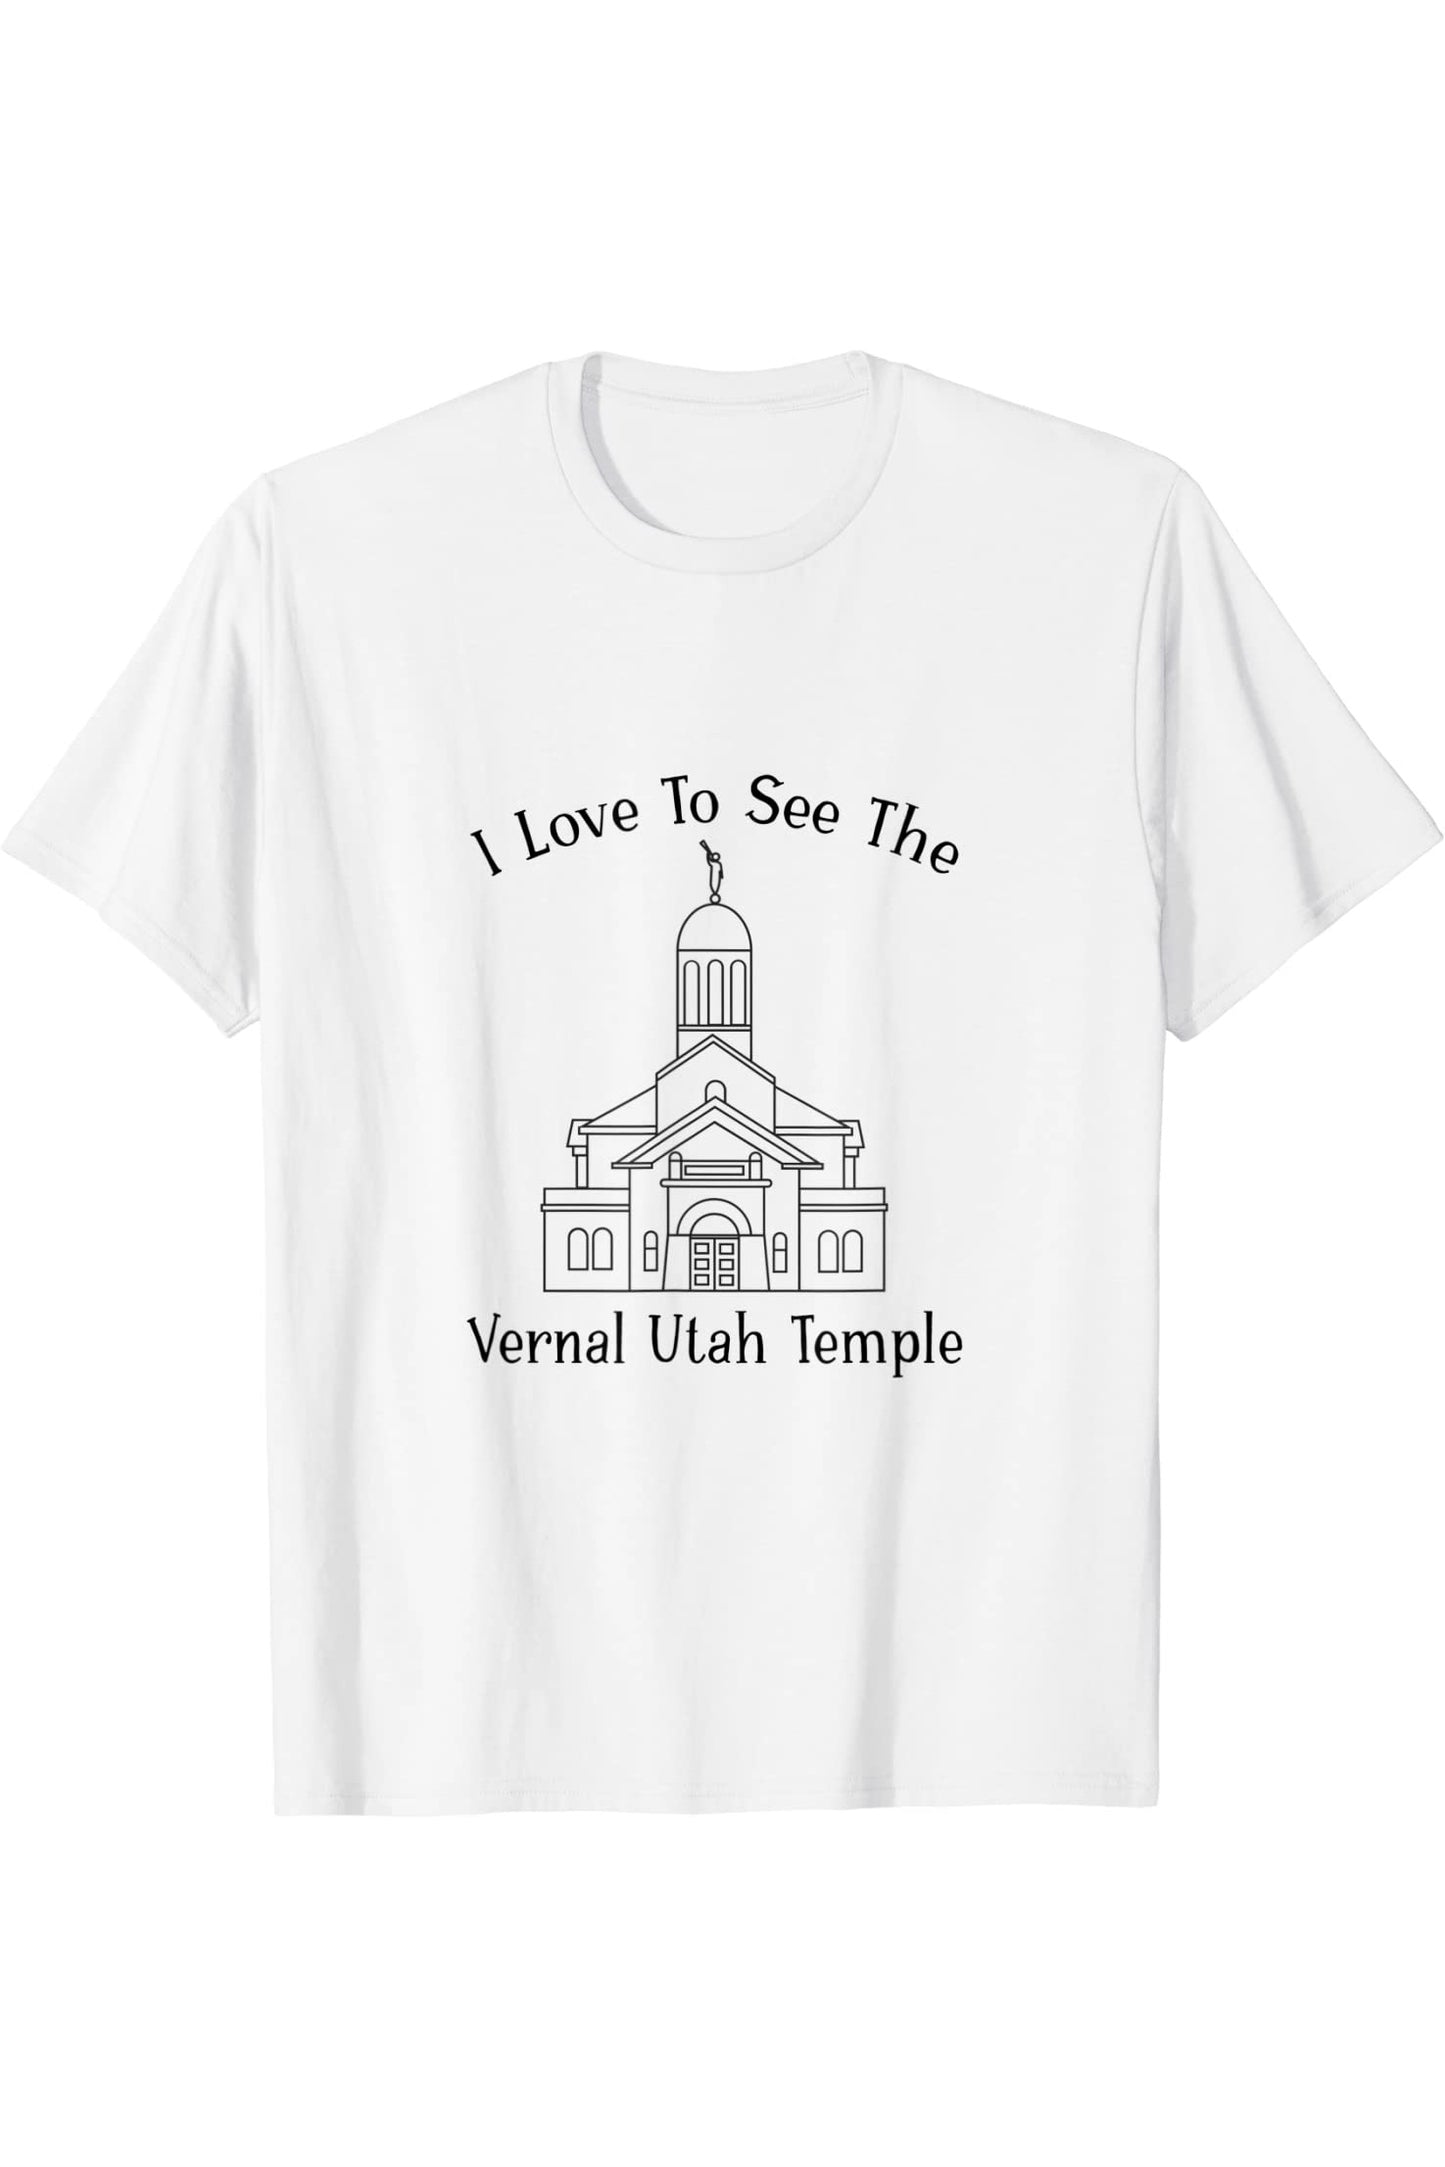 Tempio di Vernal Utah, amo vedere il mio tempio, felice T-Shirt